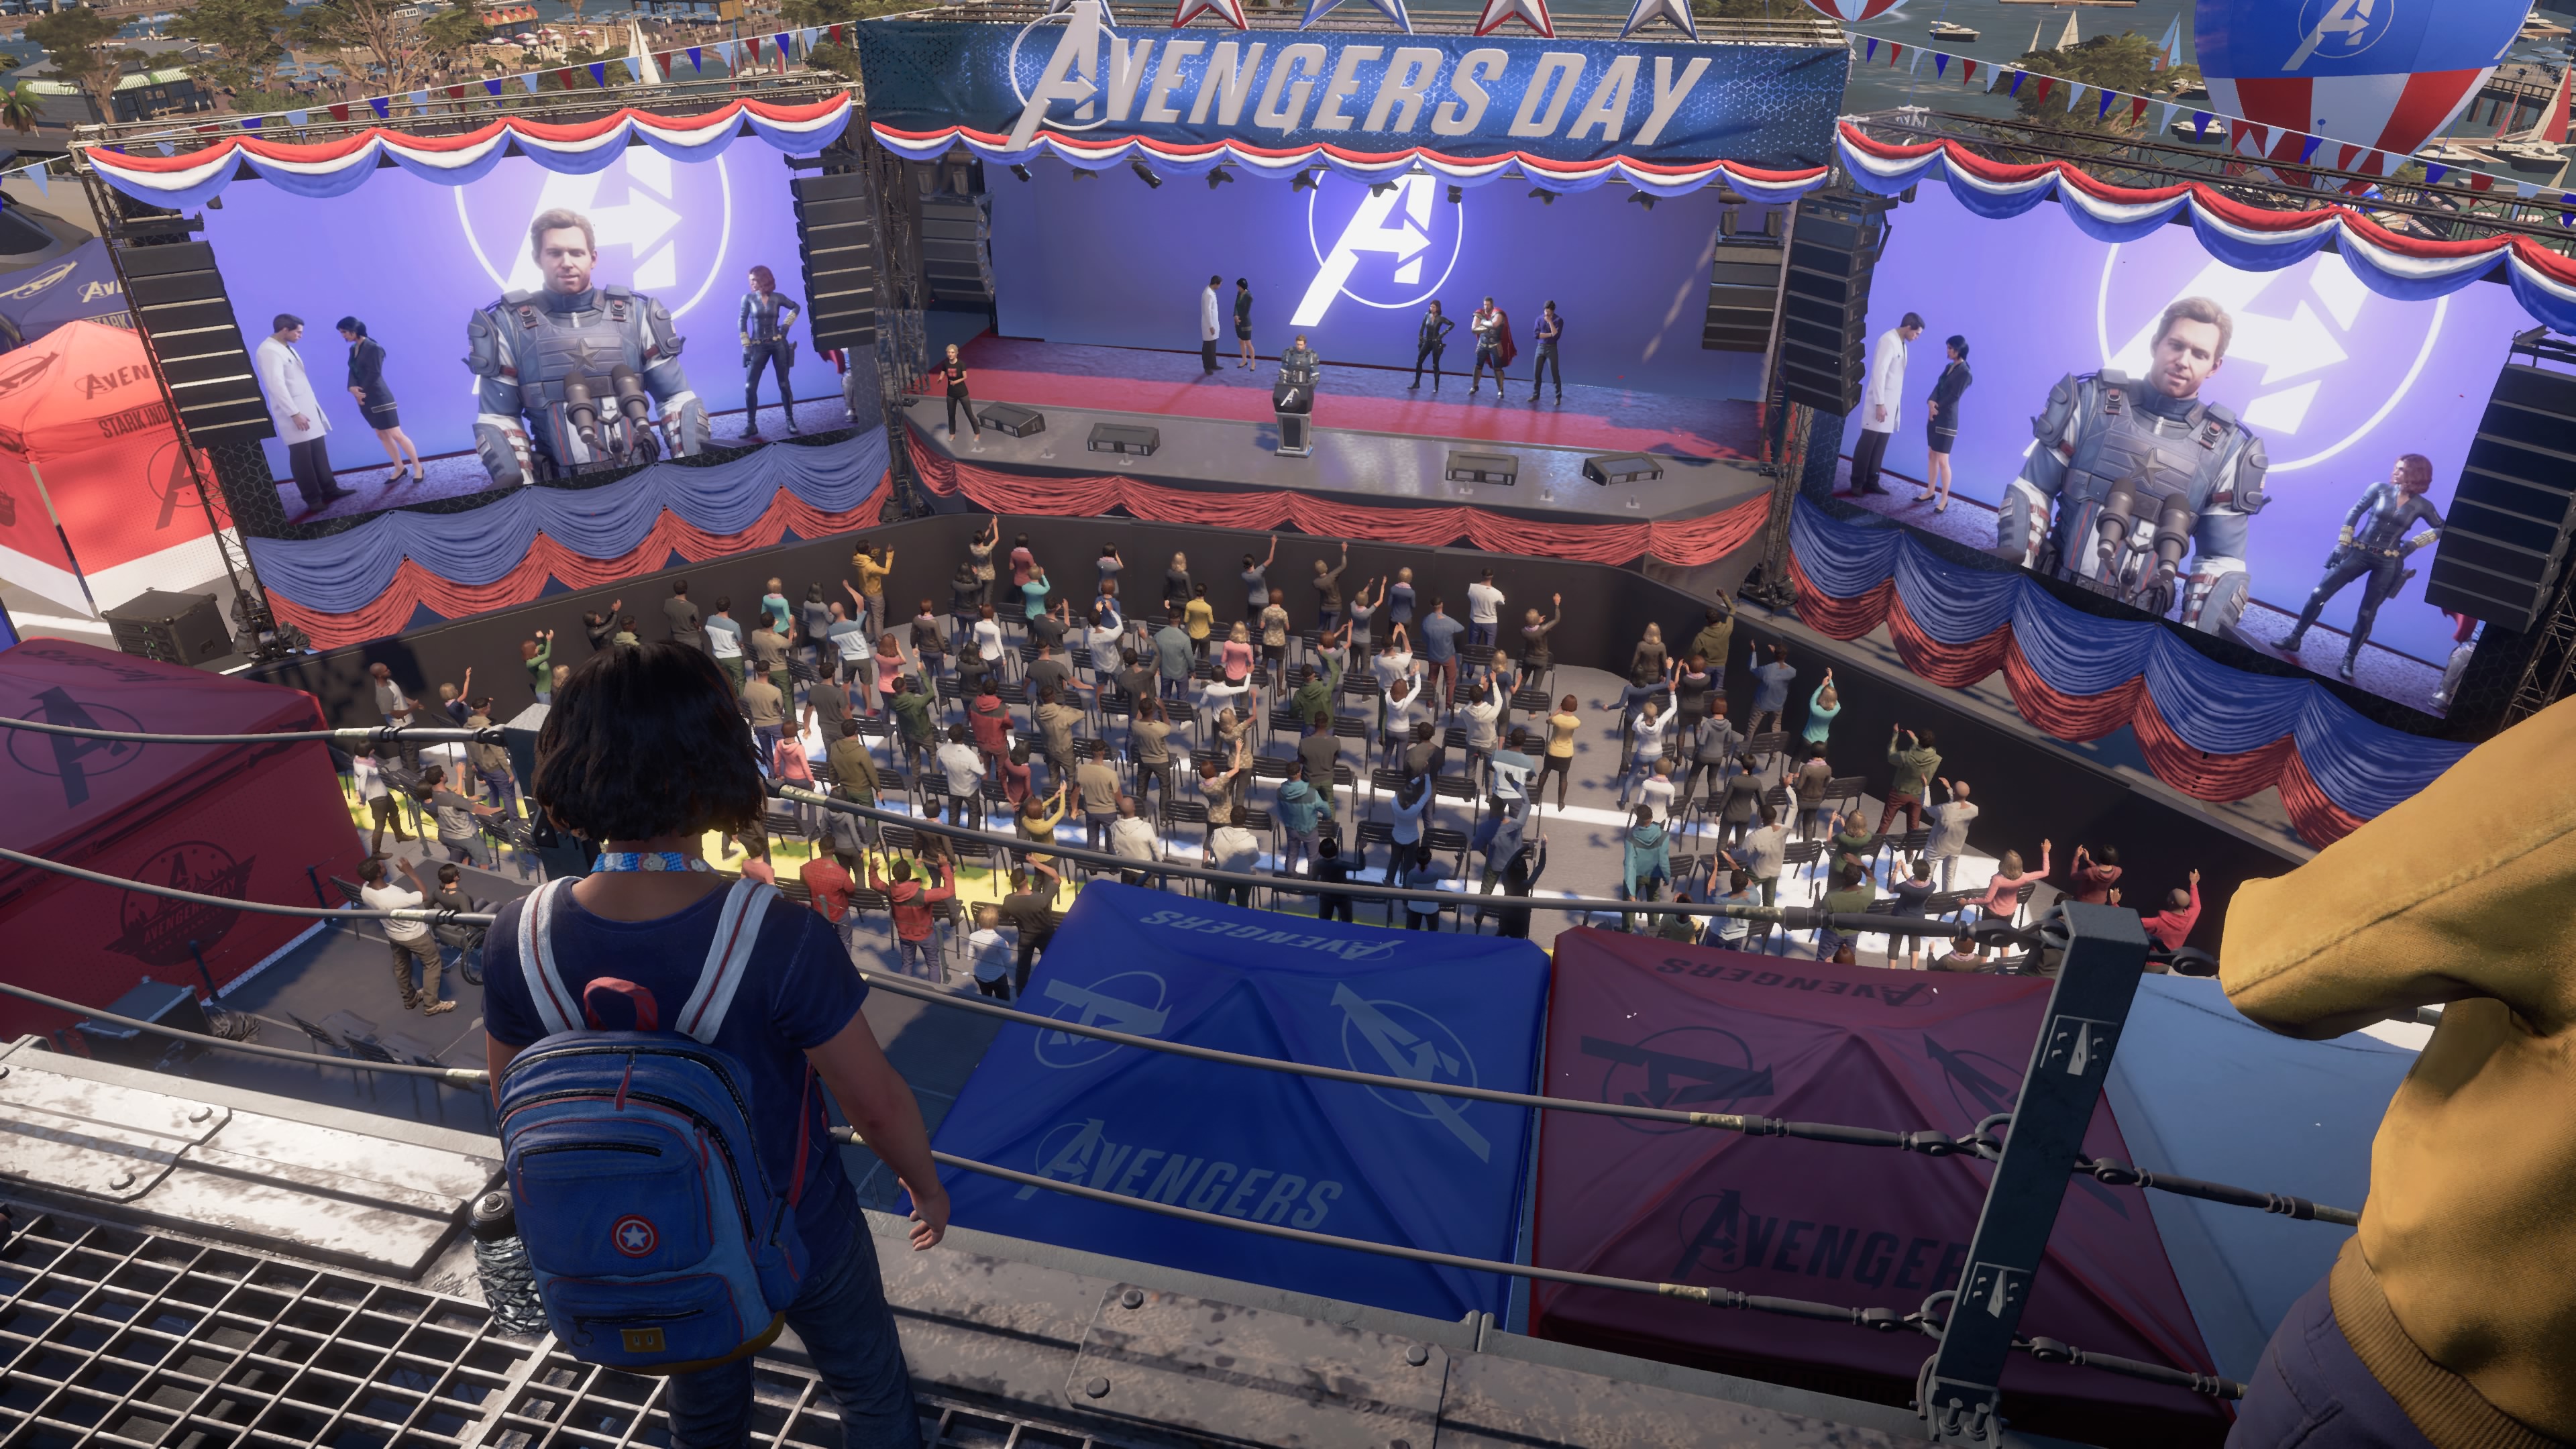 Marvel's Avengers screenshot